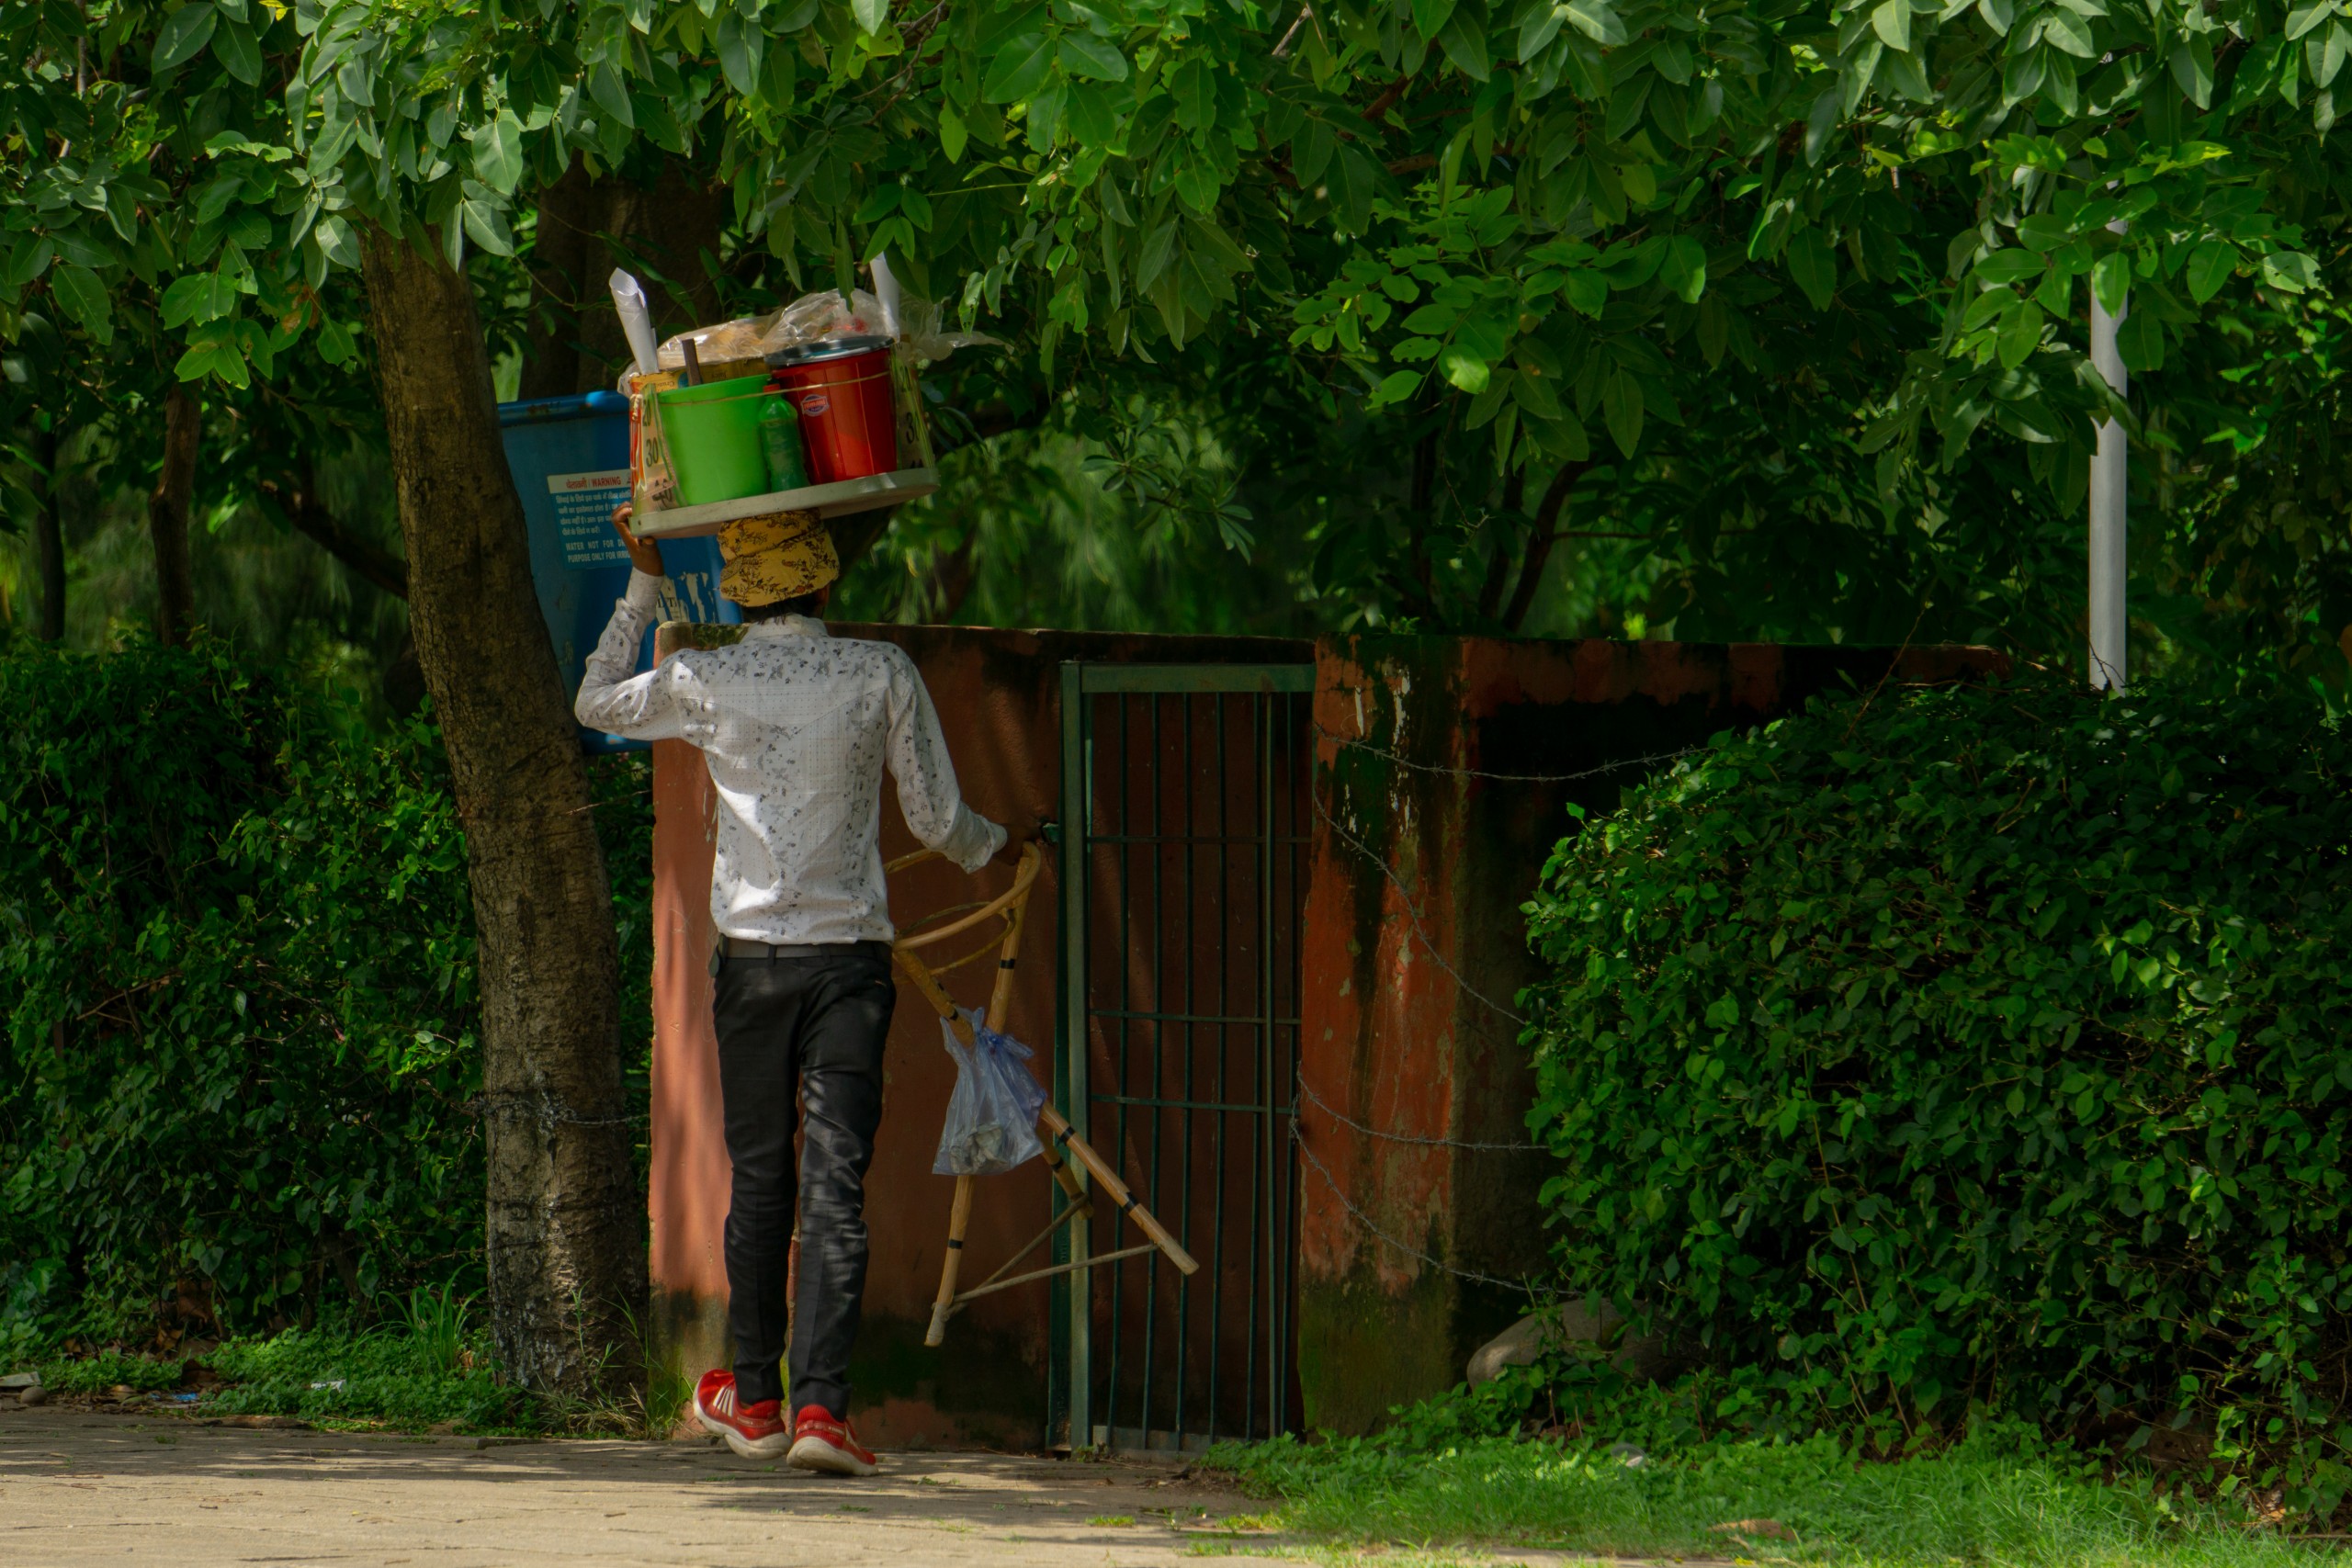 Street Vendor near a Park